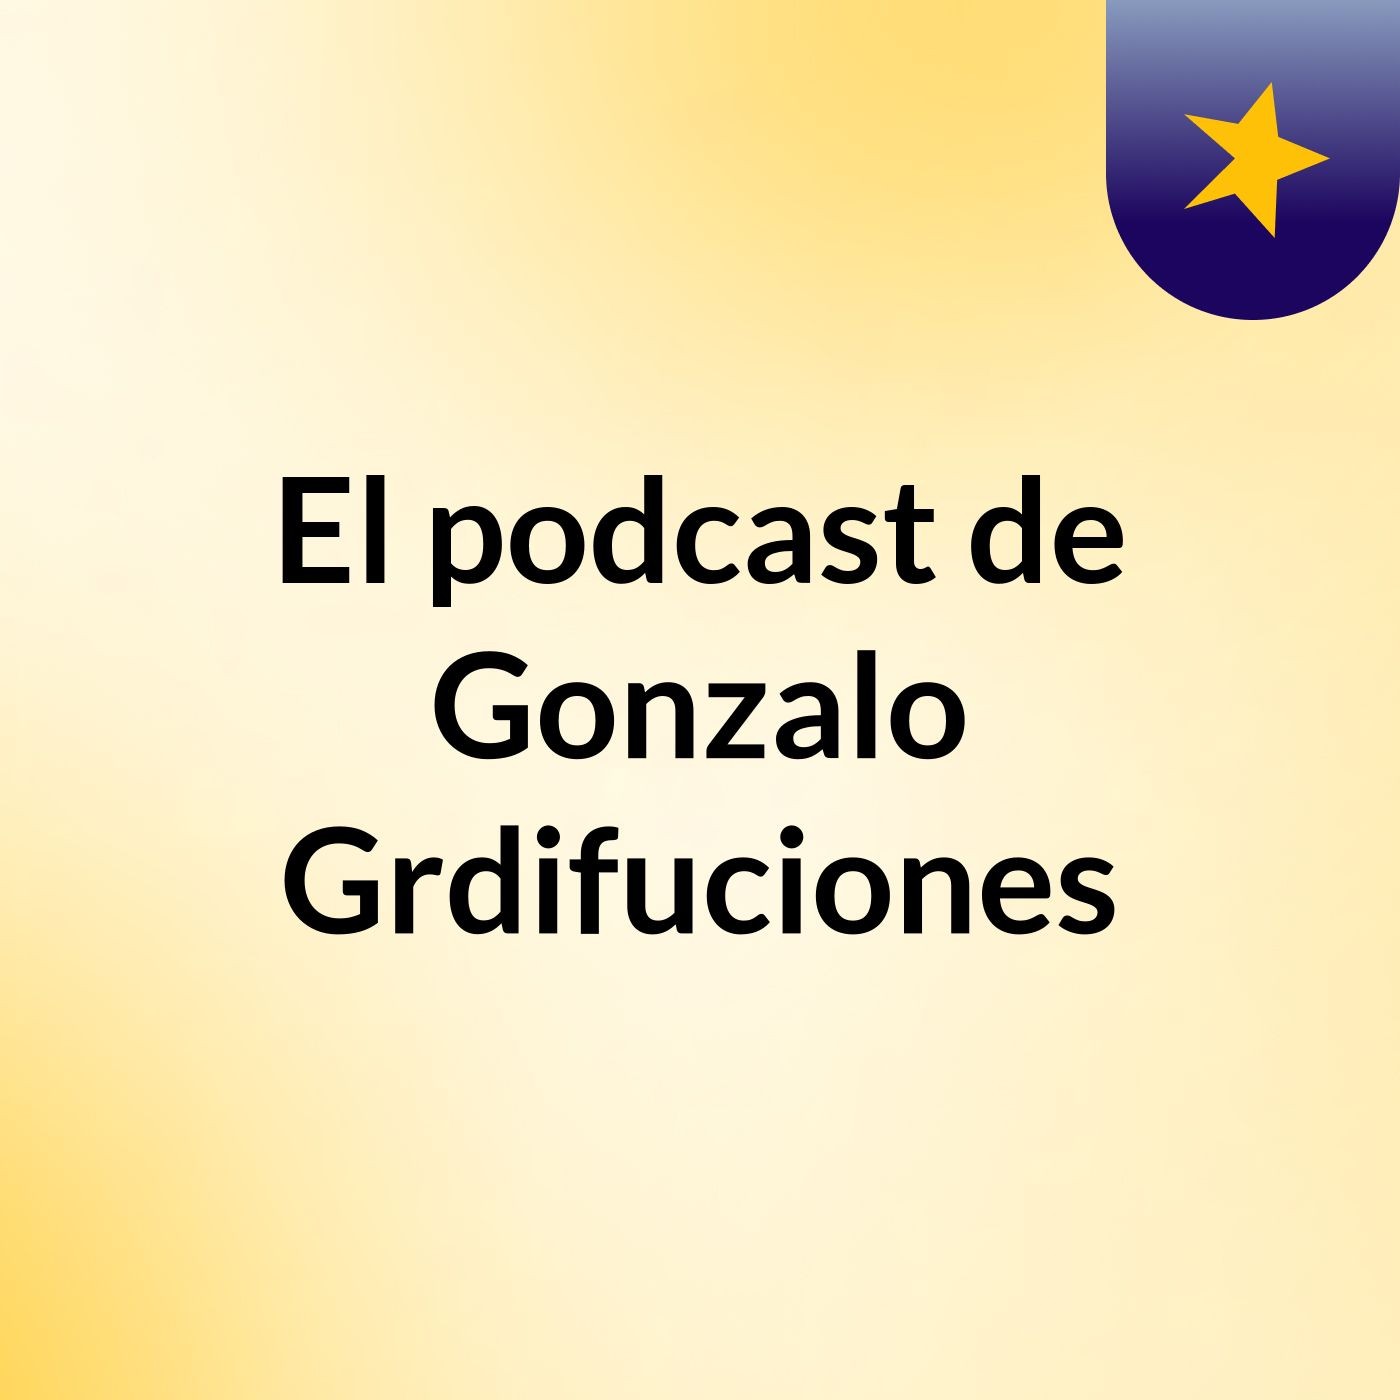 El podcast de Gonzalo Grdifuciones